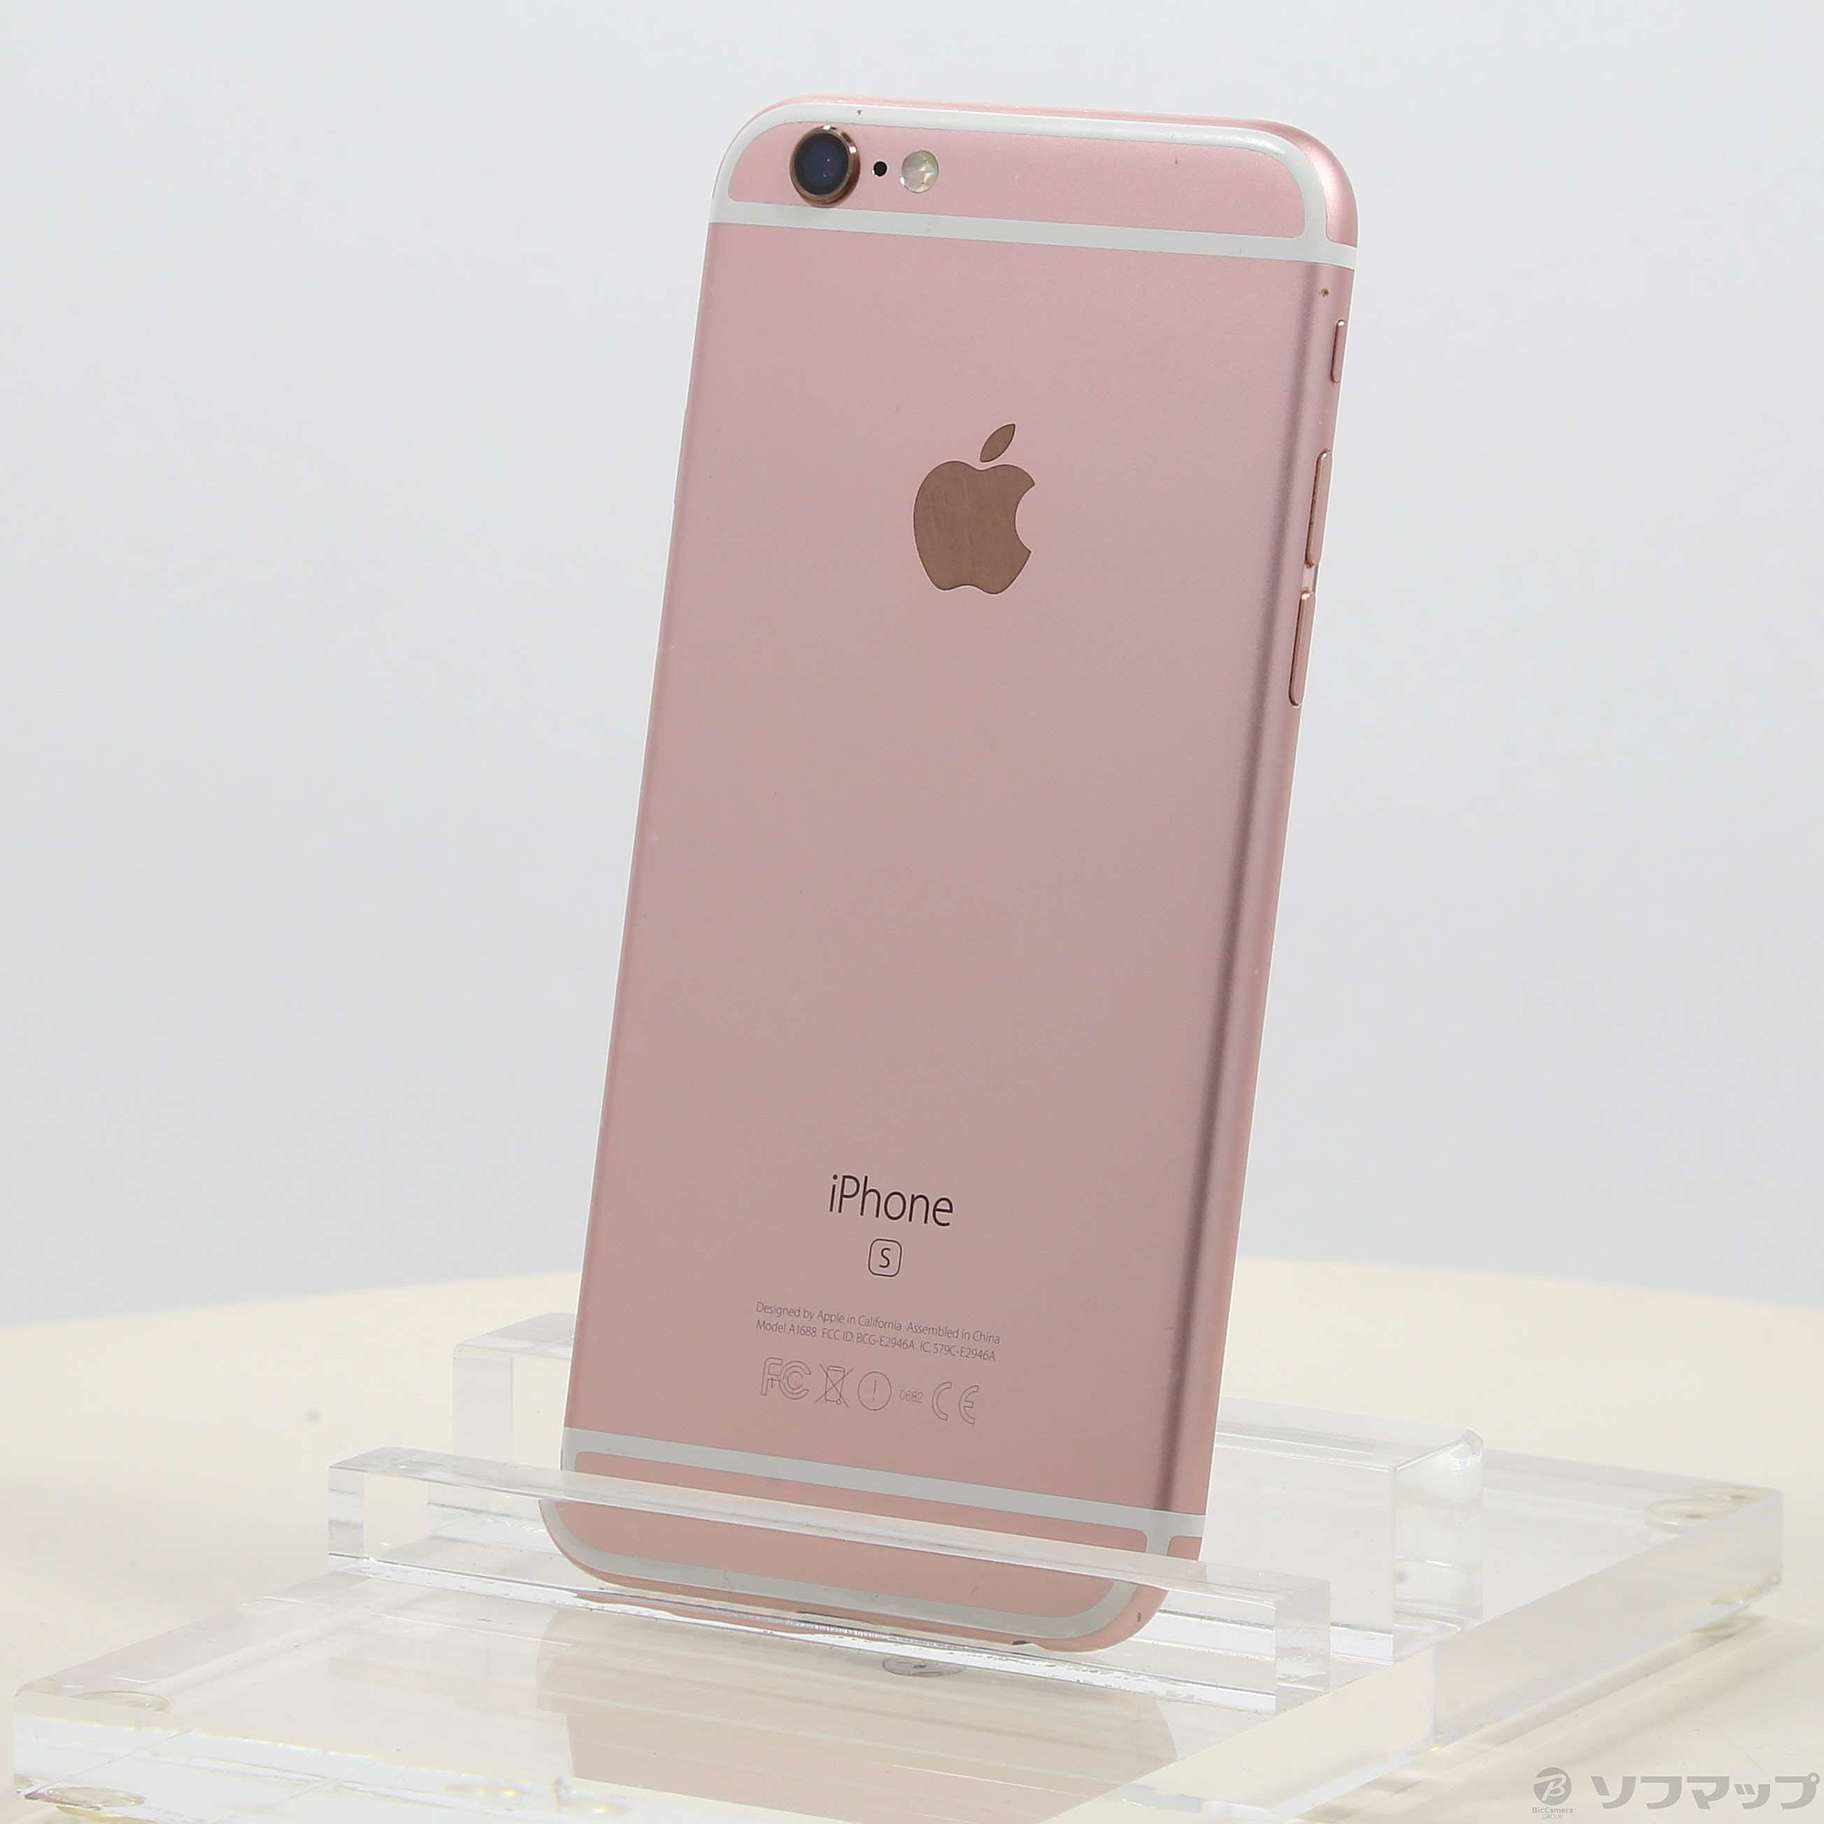 スマートフォン/携帯電話iPhone6s 16GB ピンクゴールド